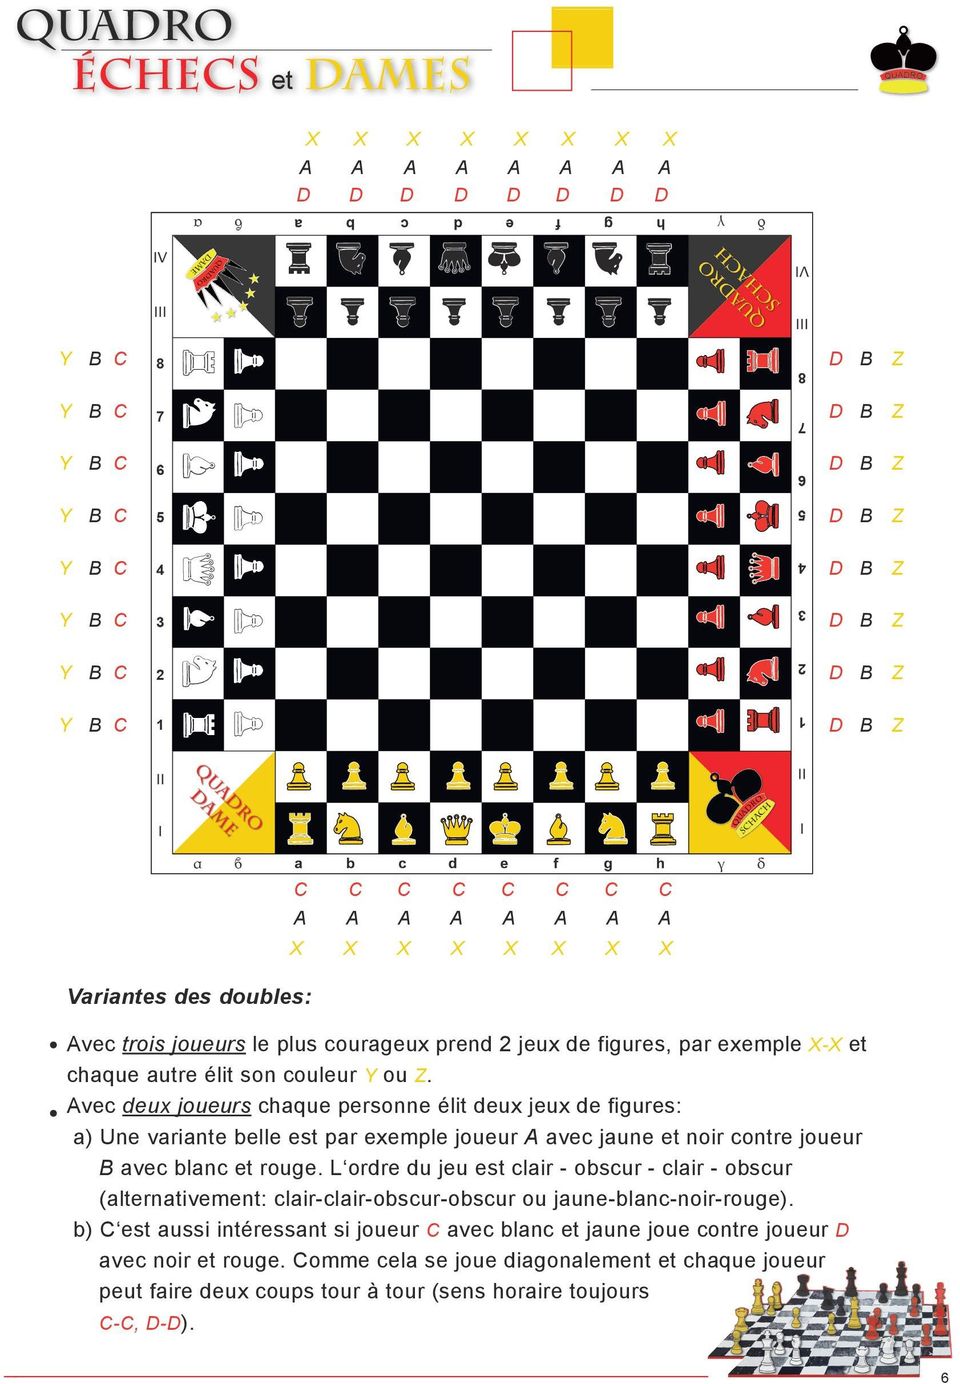 Avec deux joueurs chaque personne élit deux jeux de figures: a) Une variante belle est par exemple joueur A avec jaune et noir contre joueur avec blanc et rouge.